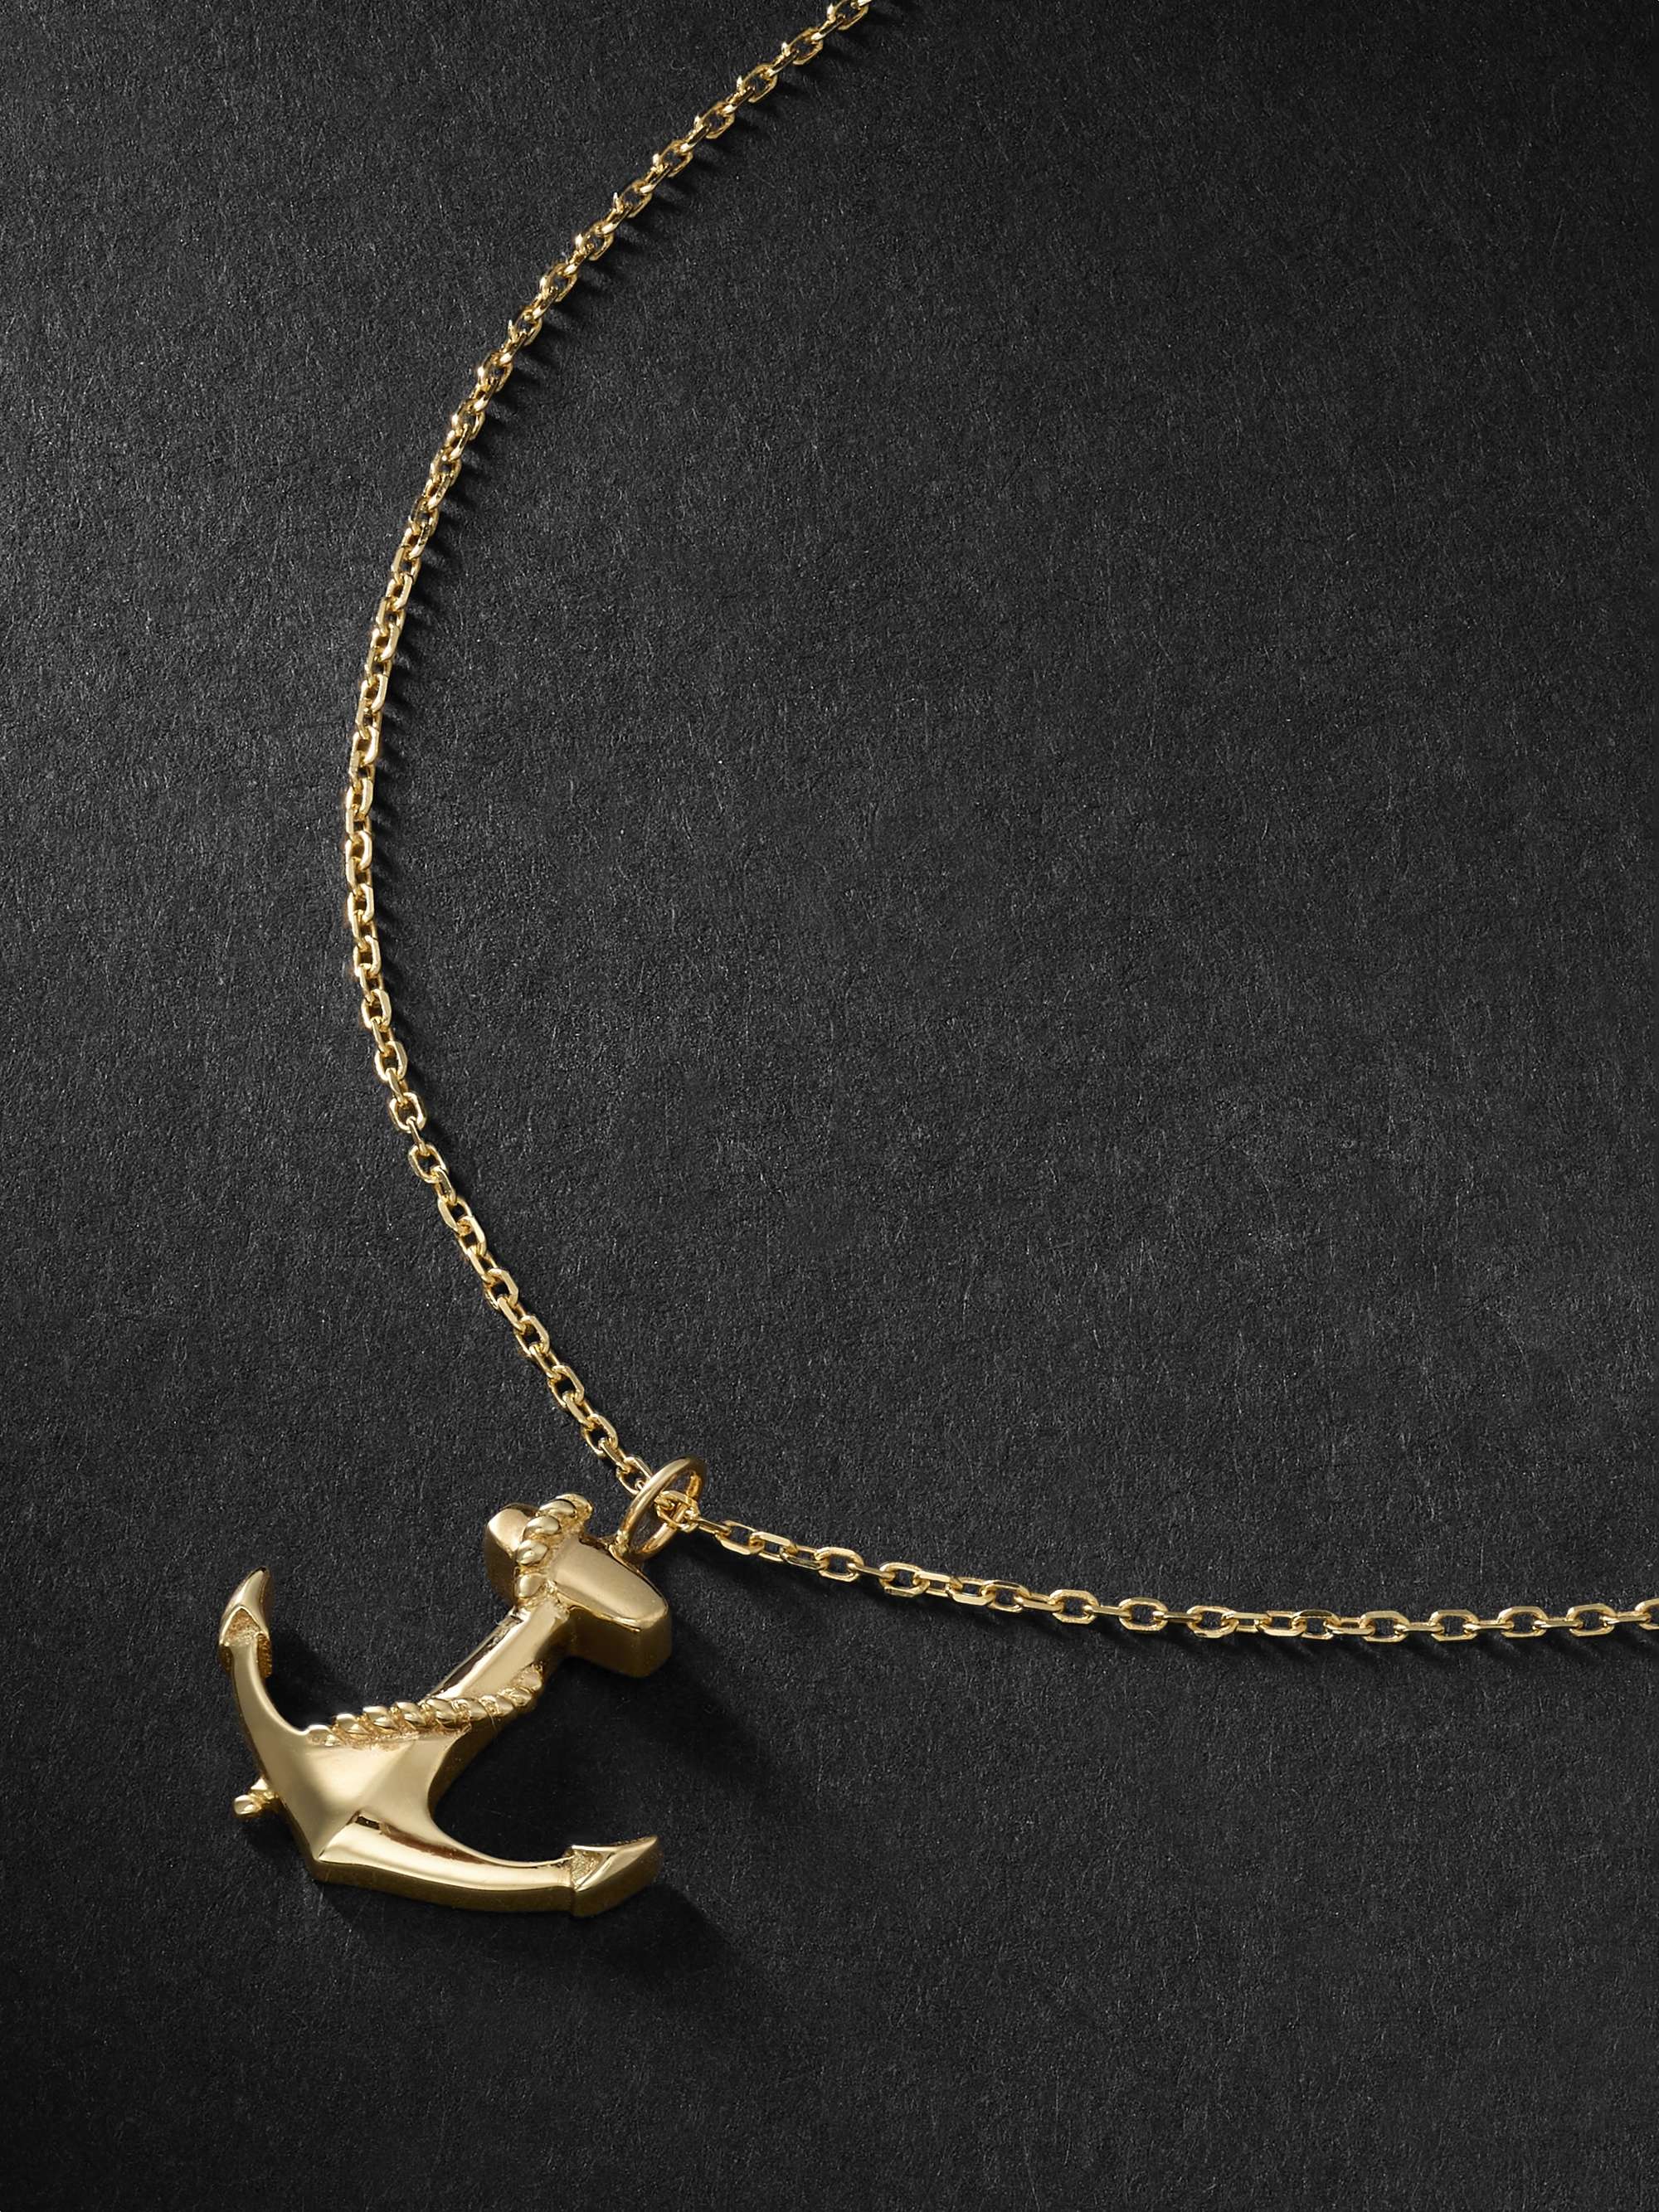 MATEO Nautical Sailor Gold Necklace